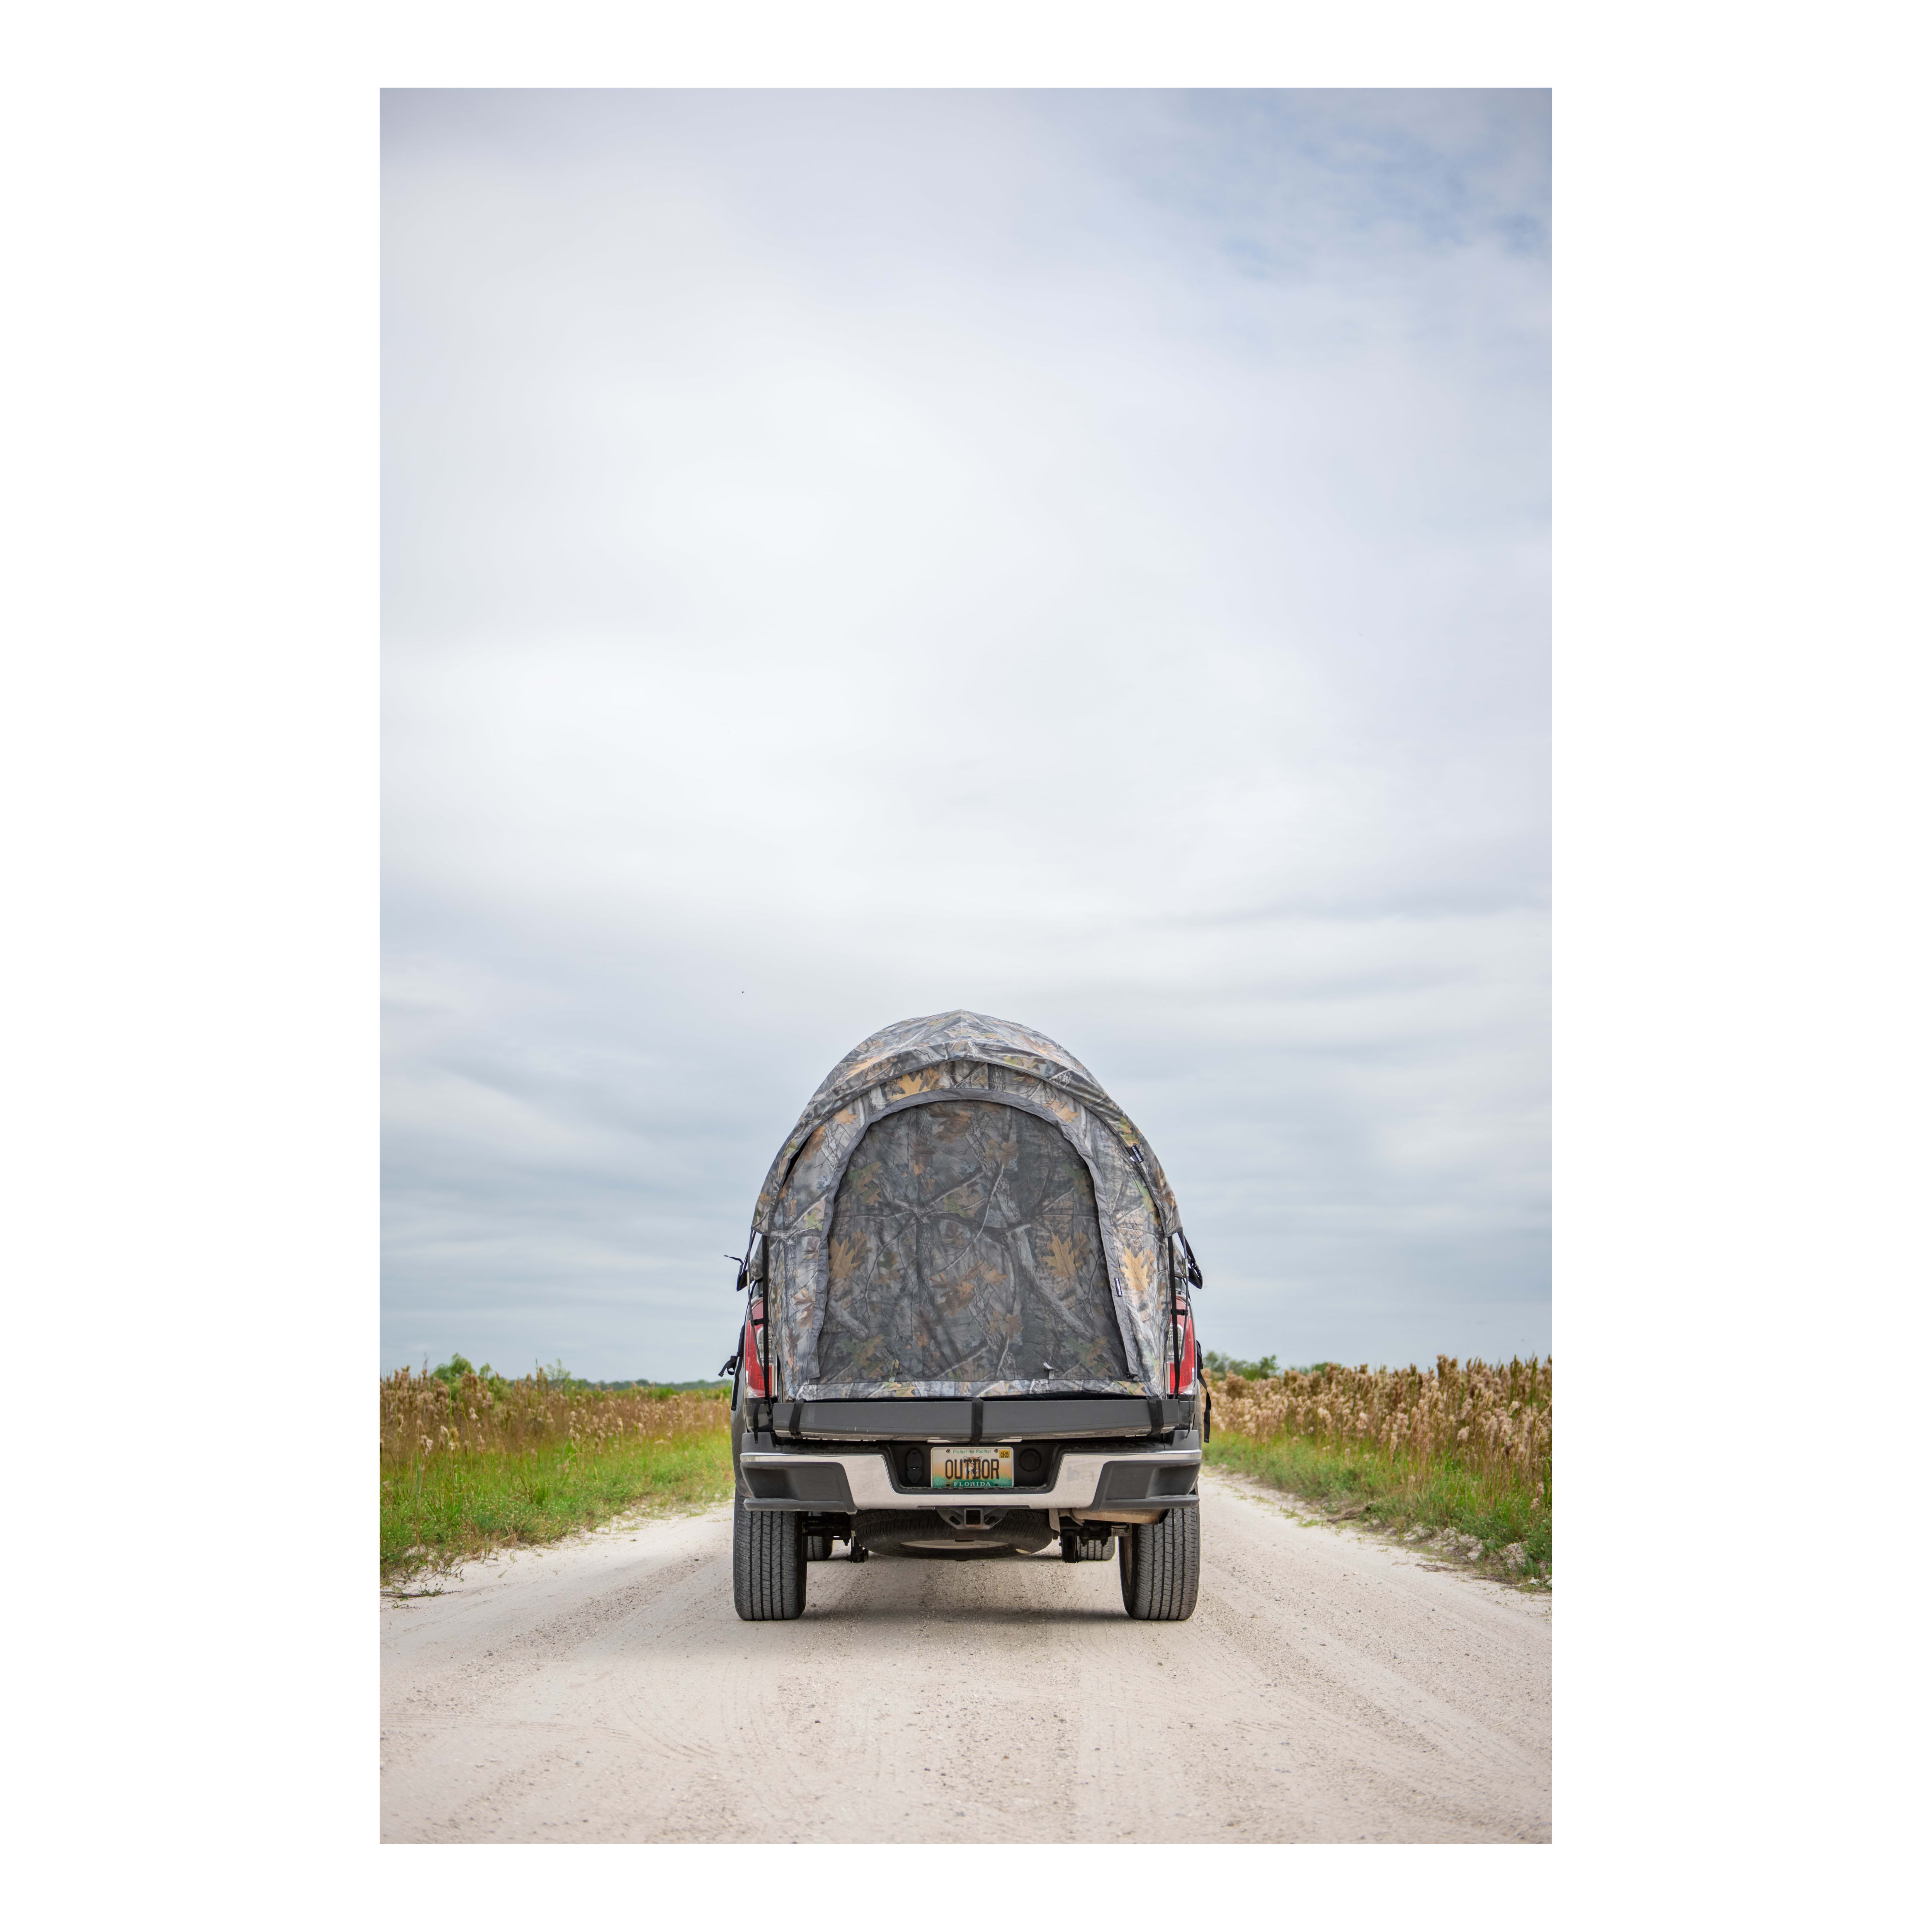 Backroadz Camo Truck Tent - Compact Regular Bed